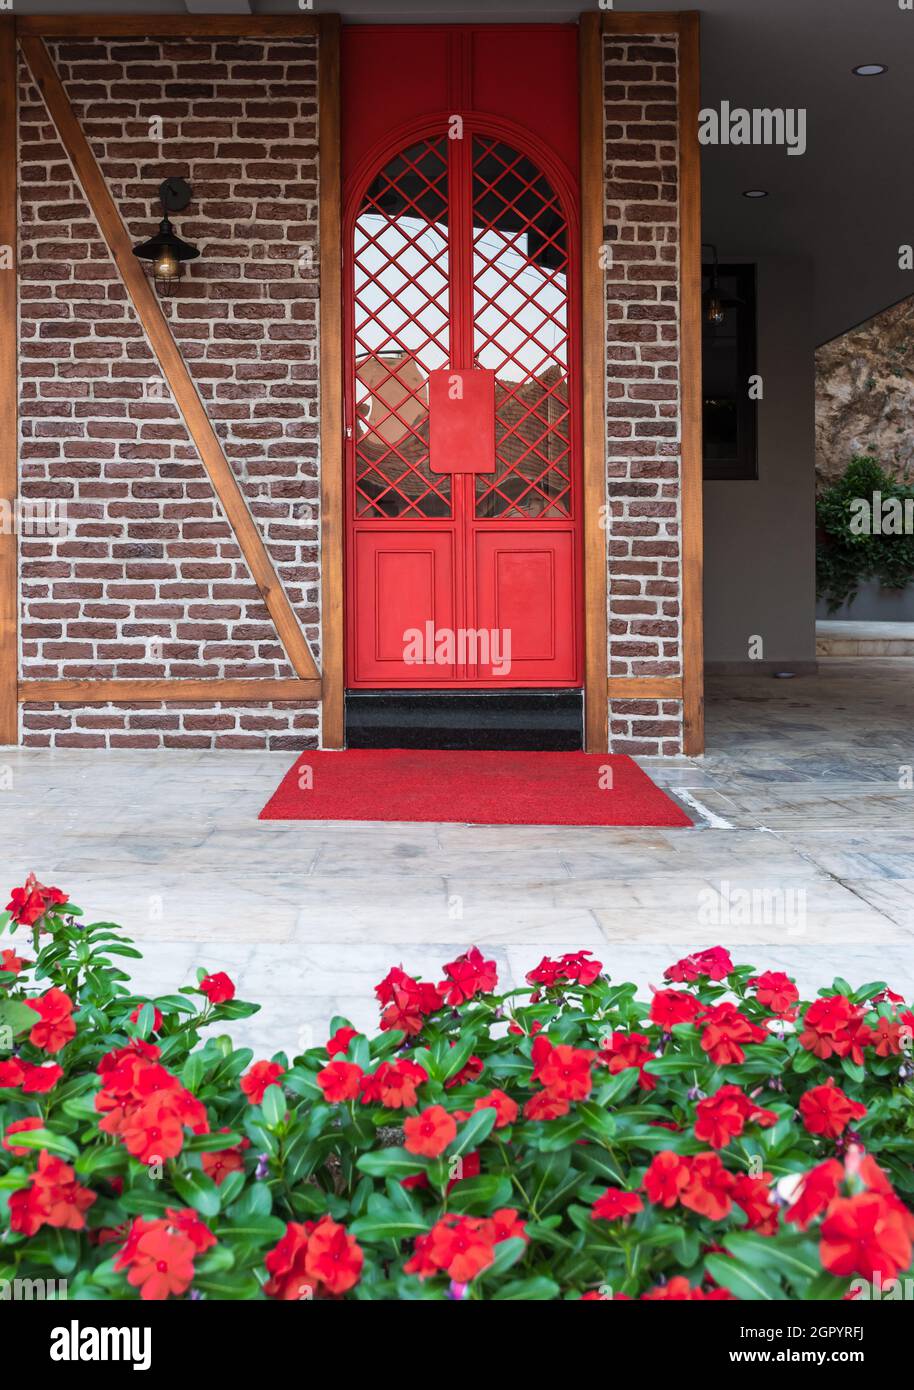 Portes en fer rouge vif entourées de fleurs rouges sur un mur de briques dans une maison turque Banque D'Images